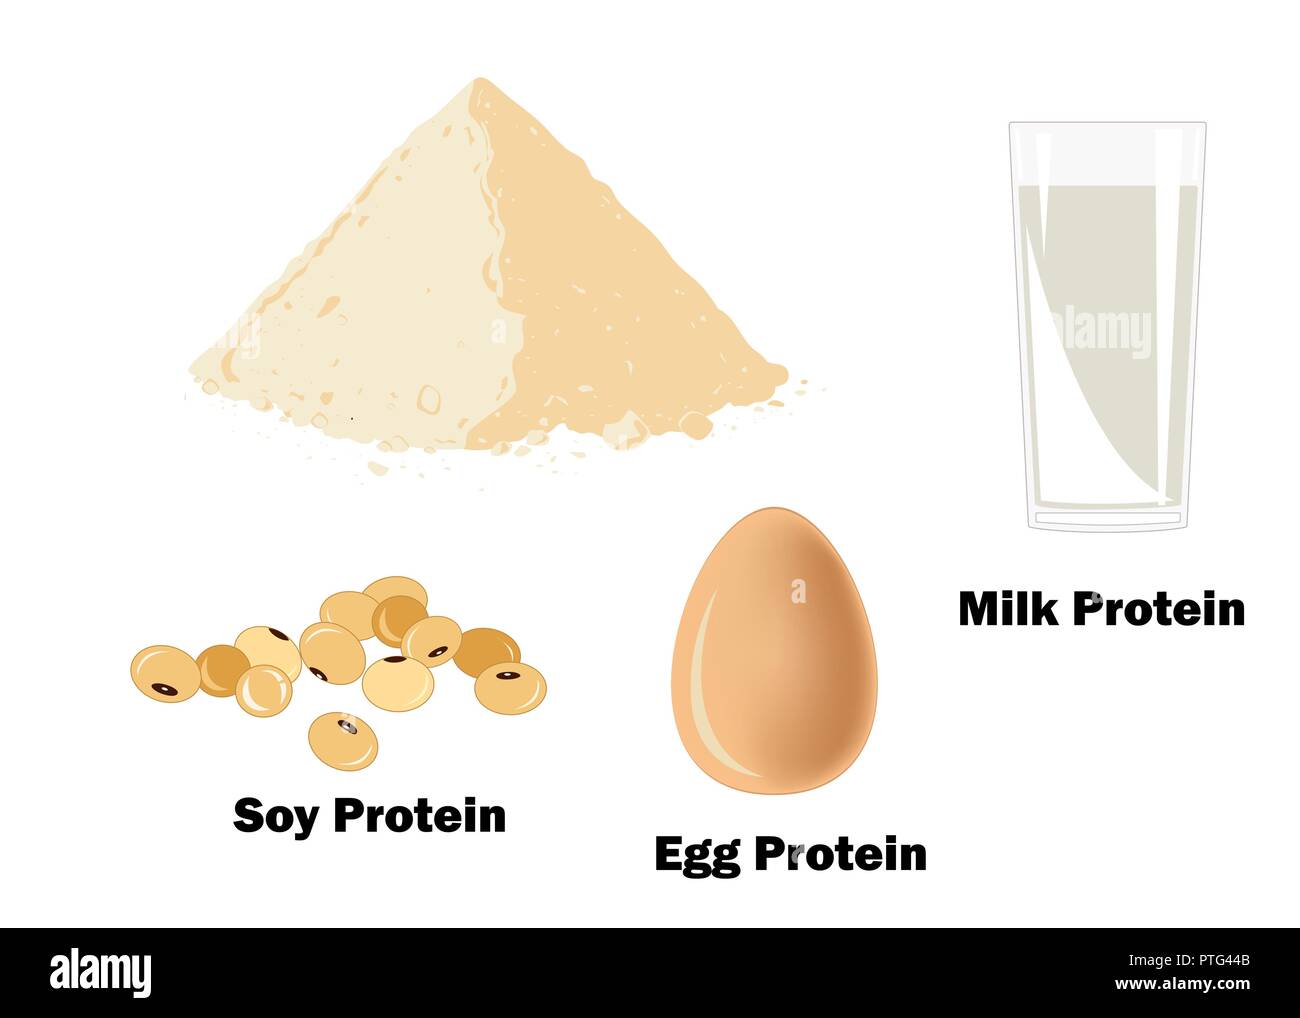 Die wichtigsten Quellen von Protein für Bodybuilder. Milch oder Kasein, Eiern, Soja Protein Pulver. Vector Illustration. Bodybuilding Supplement Konzept. Stock Vektor